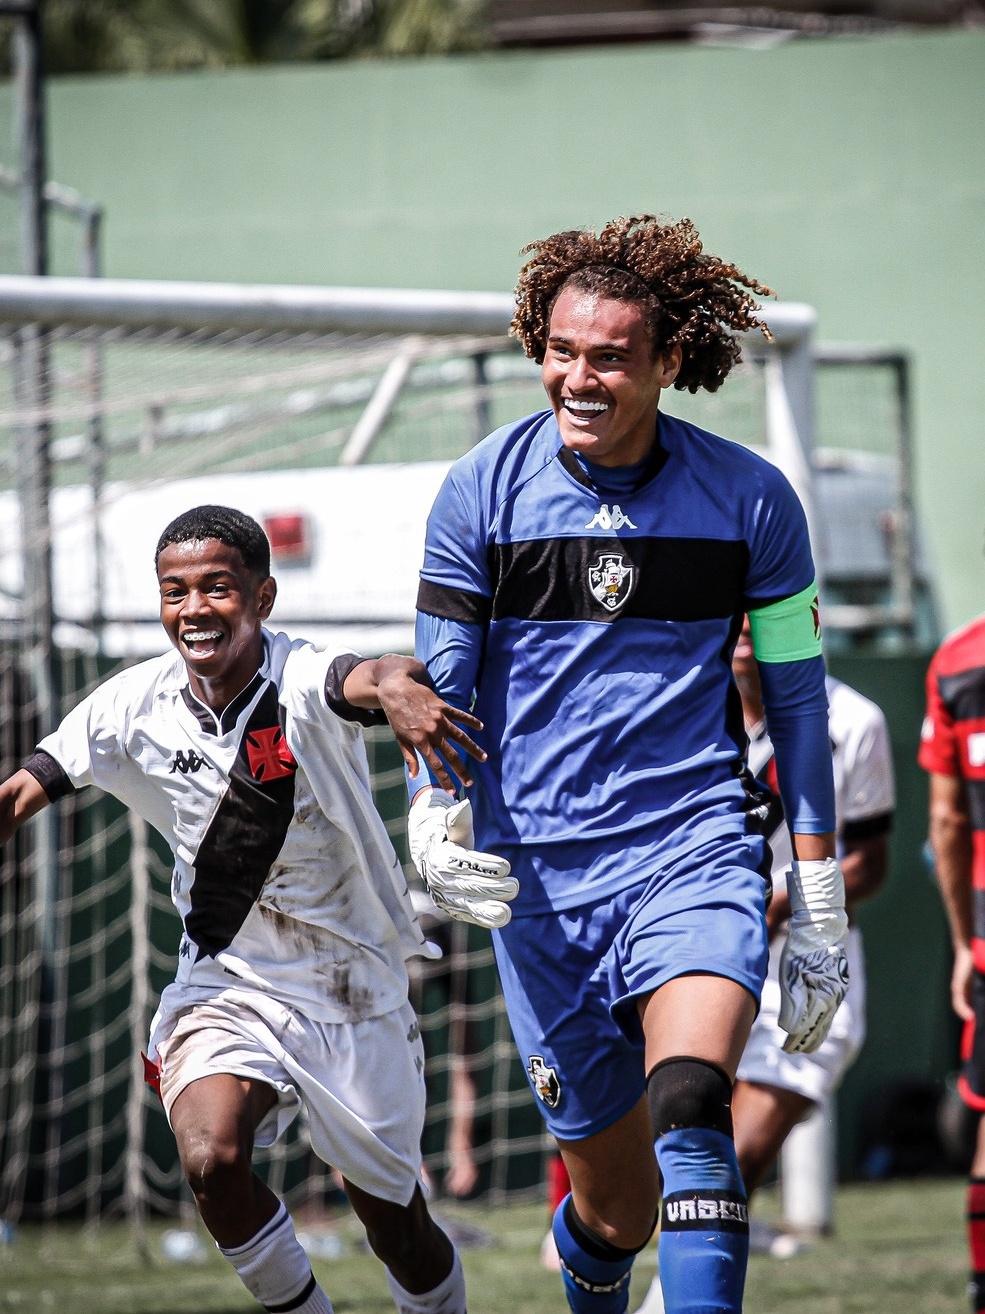 Phillipe Gabriel faz gol, pega três pênaltis e Sub-17 vence o Flamengo nos  pênaltis – Vasco da Gama